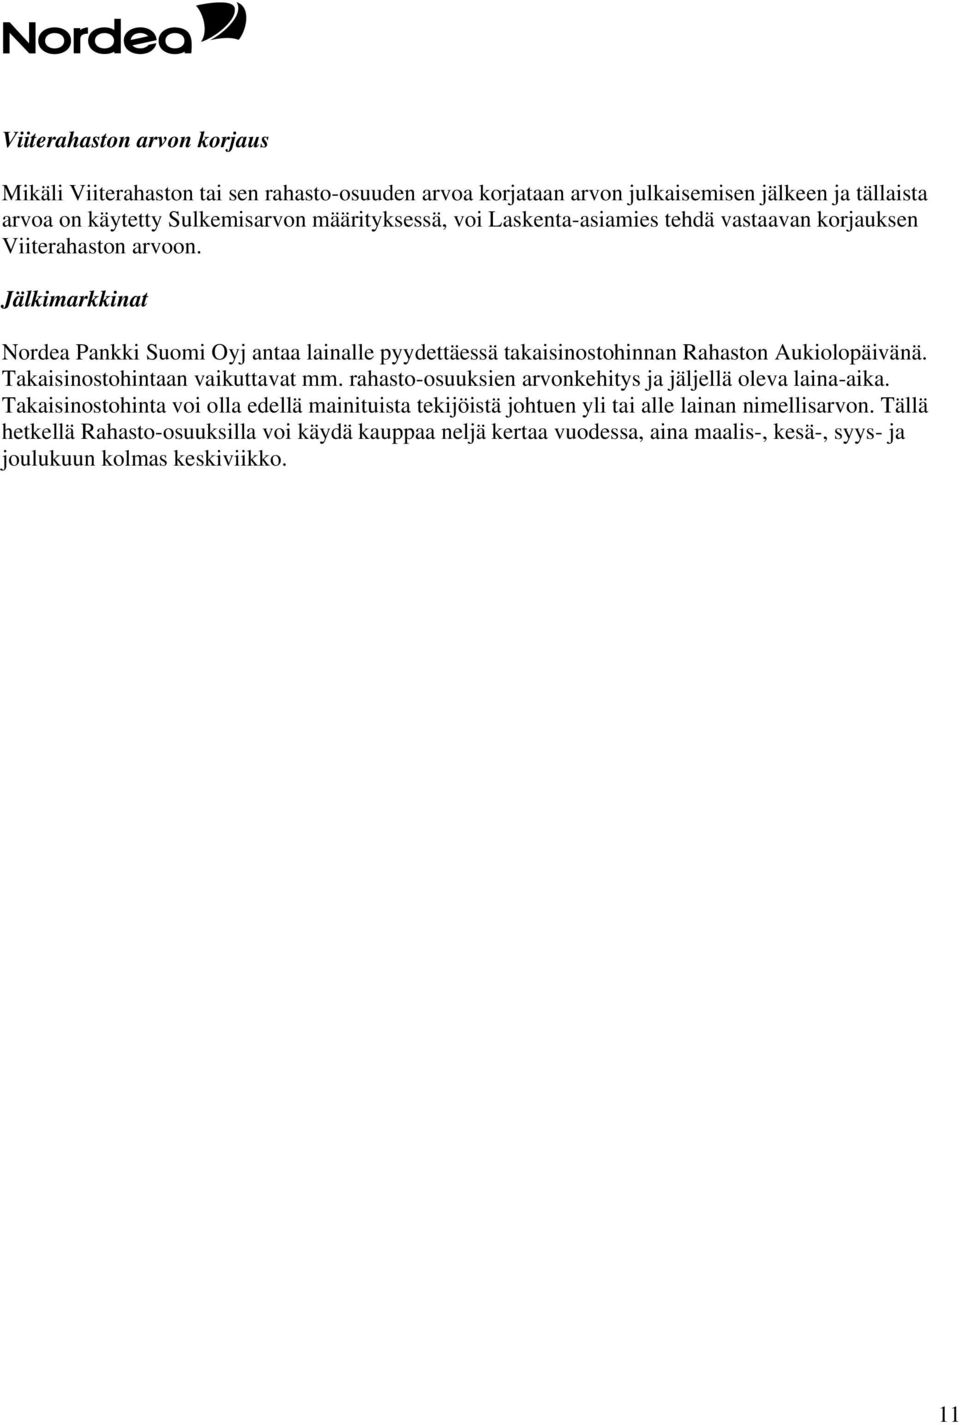 Jälkimarkkinat Nordea Pankki Suomi Oyj antaa lainalle pyydettäessä takaisinostohinnan Rahaston Aukiolopäivänä. Takaisinostohintaan vaikuttavat mm.